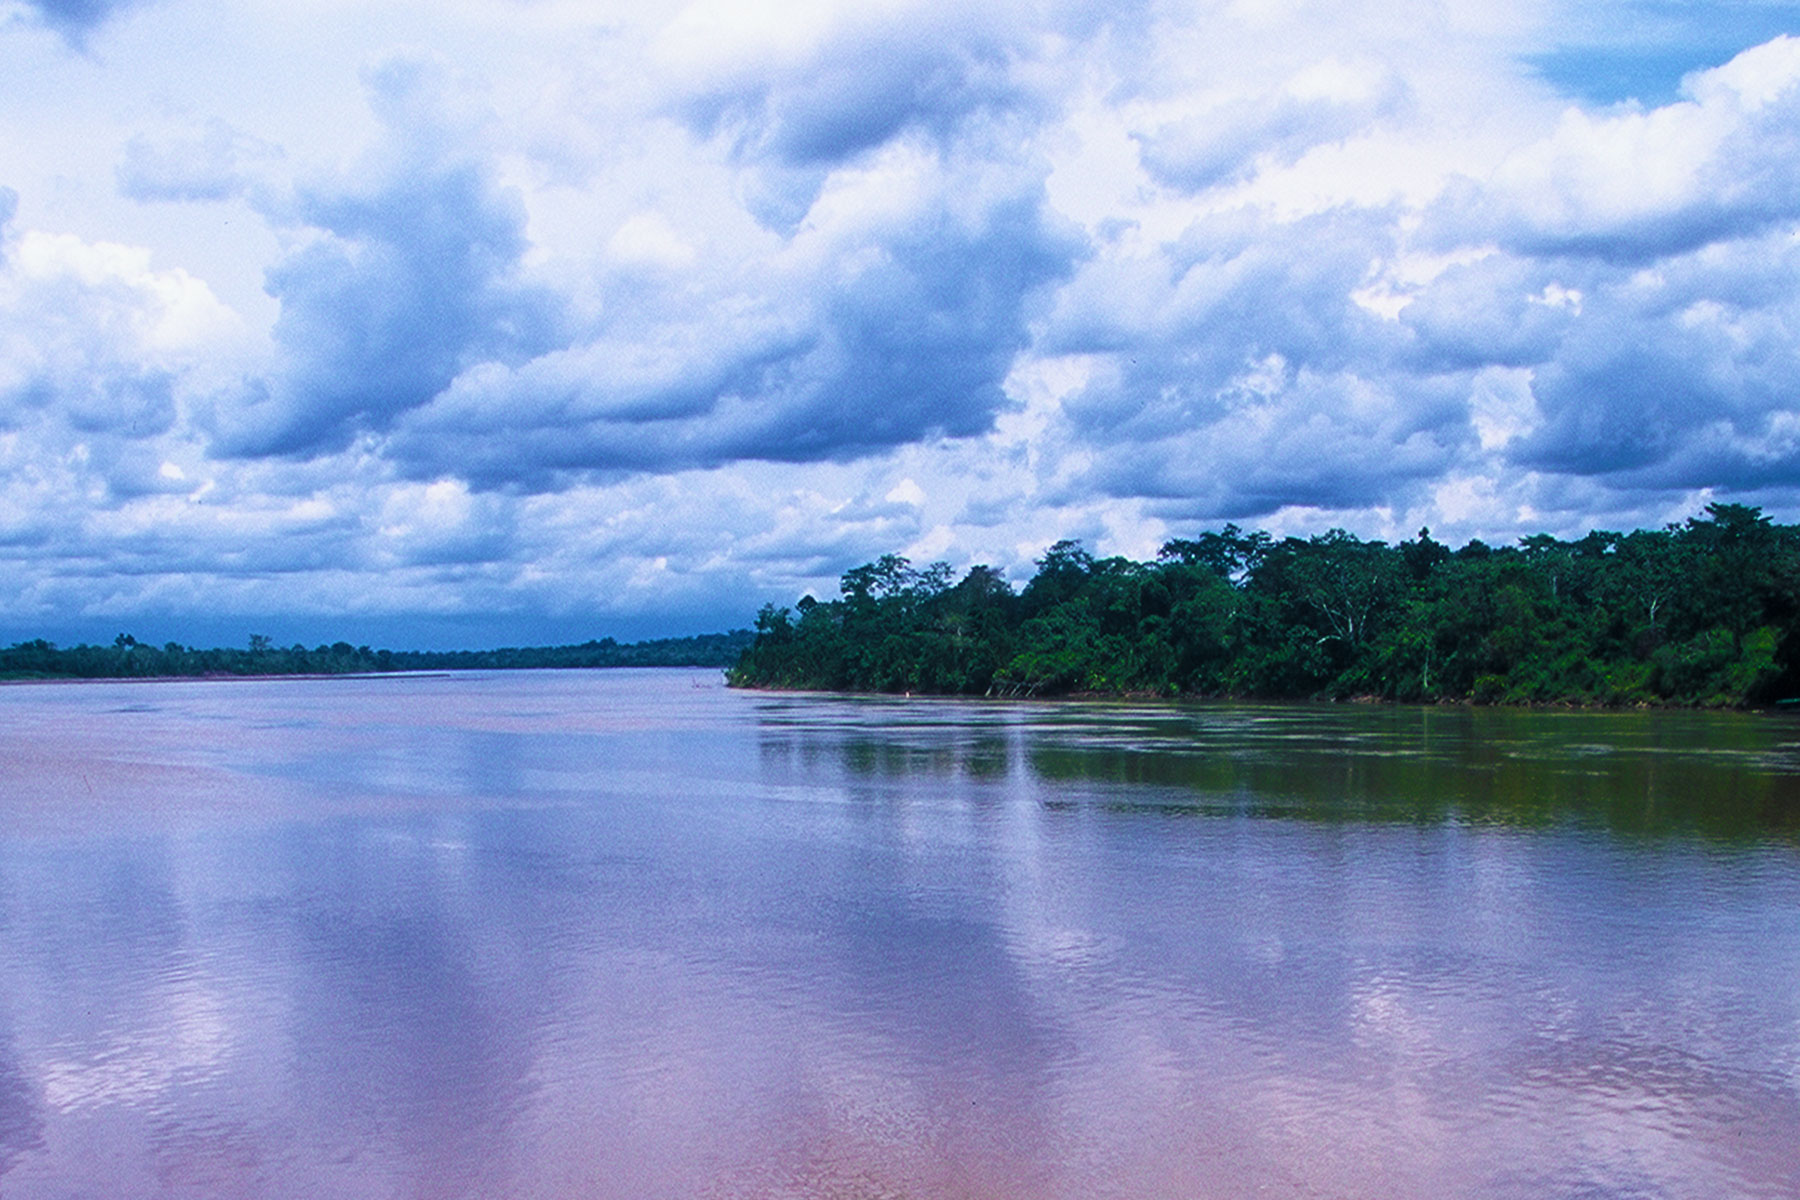 Rio Napo | Tiputini Biodiversity Ecuador | Amazon Rainforest Photo Journal | Dr. Steven Andrew Martin | Environmental Studies